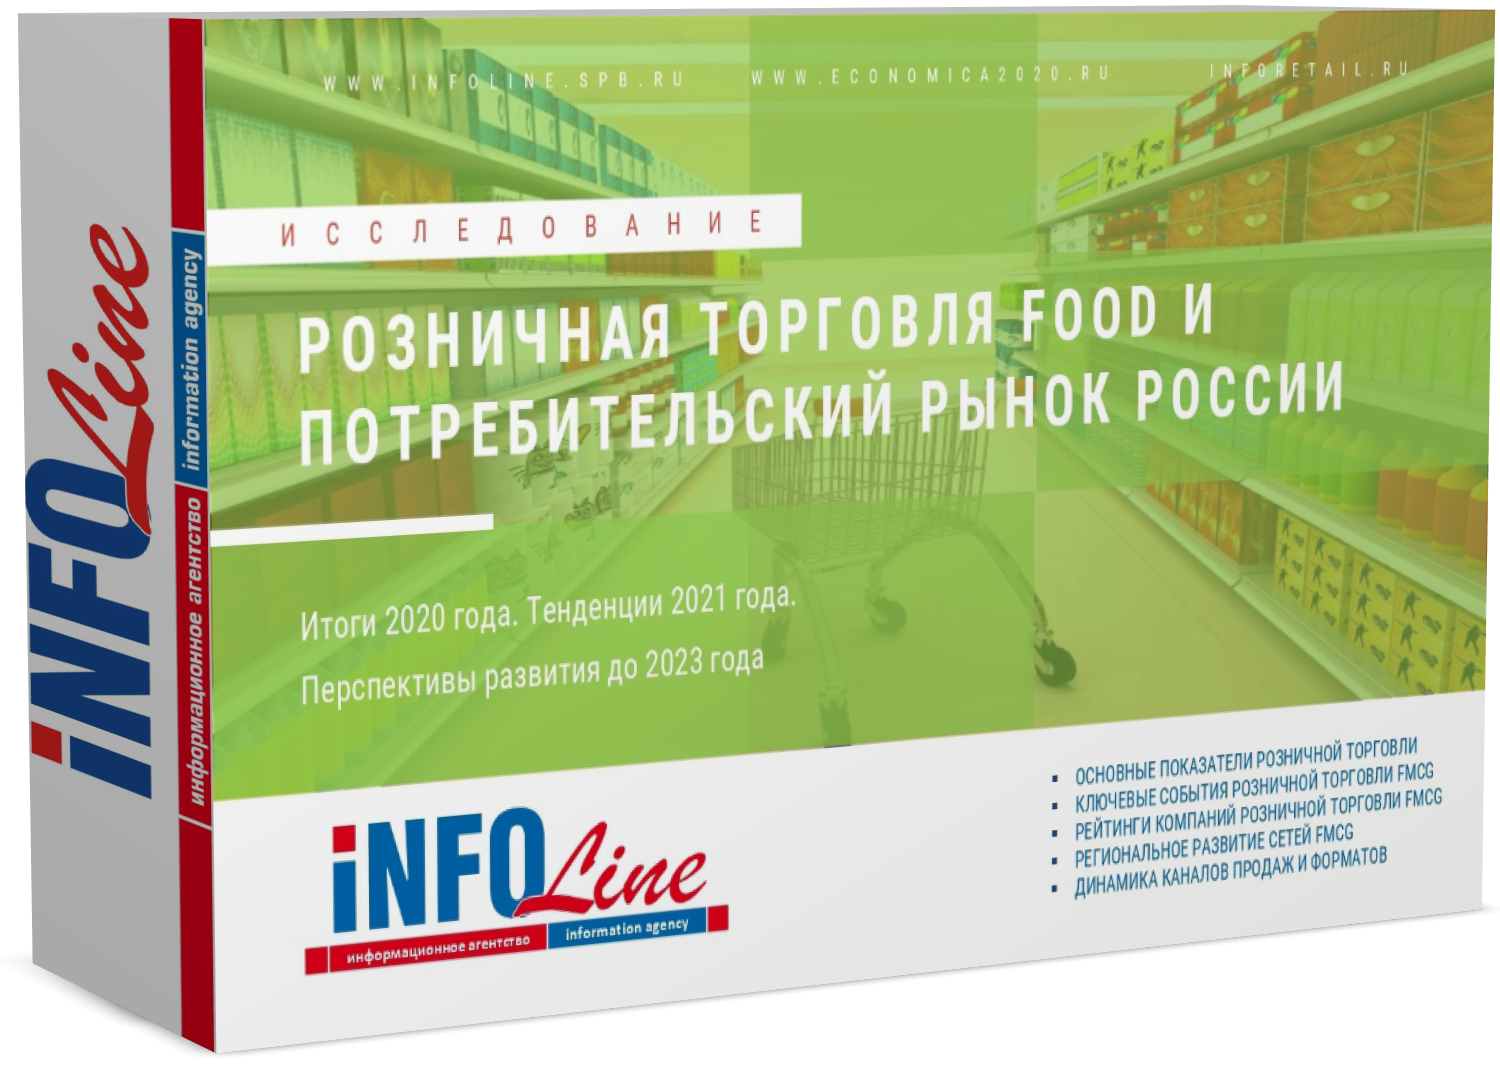 Исследование "Розничная торговля Food и потребительский рынок России 2021 года. Итоги 2020 года и перспективы развития до 2023 года" (доступна обновленная версия)